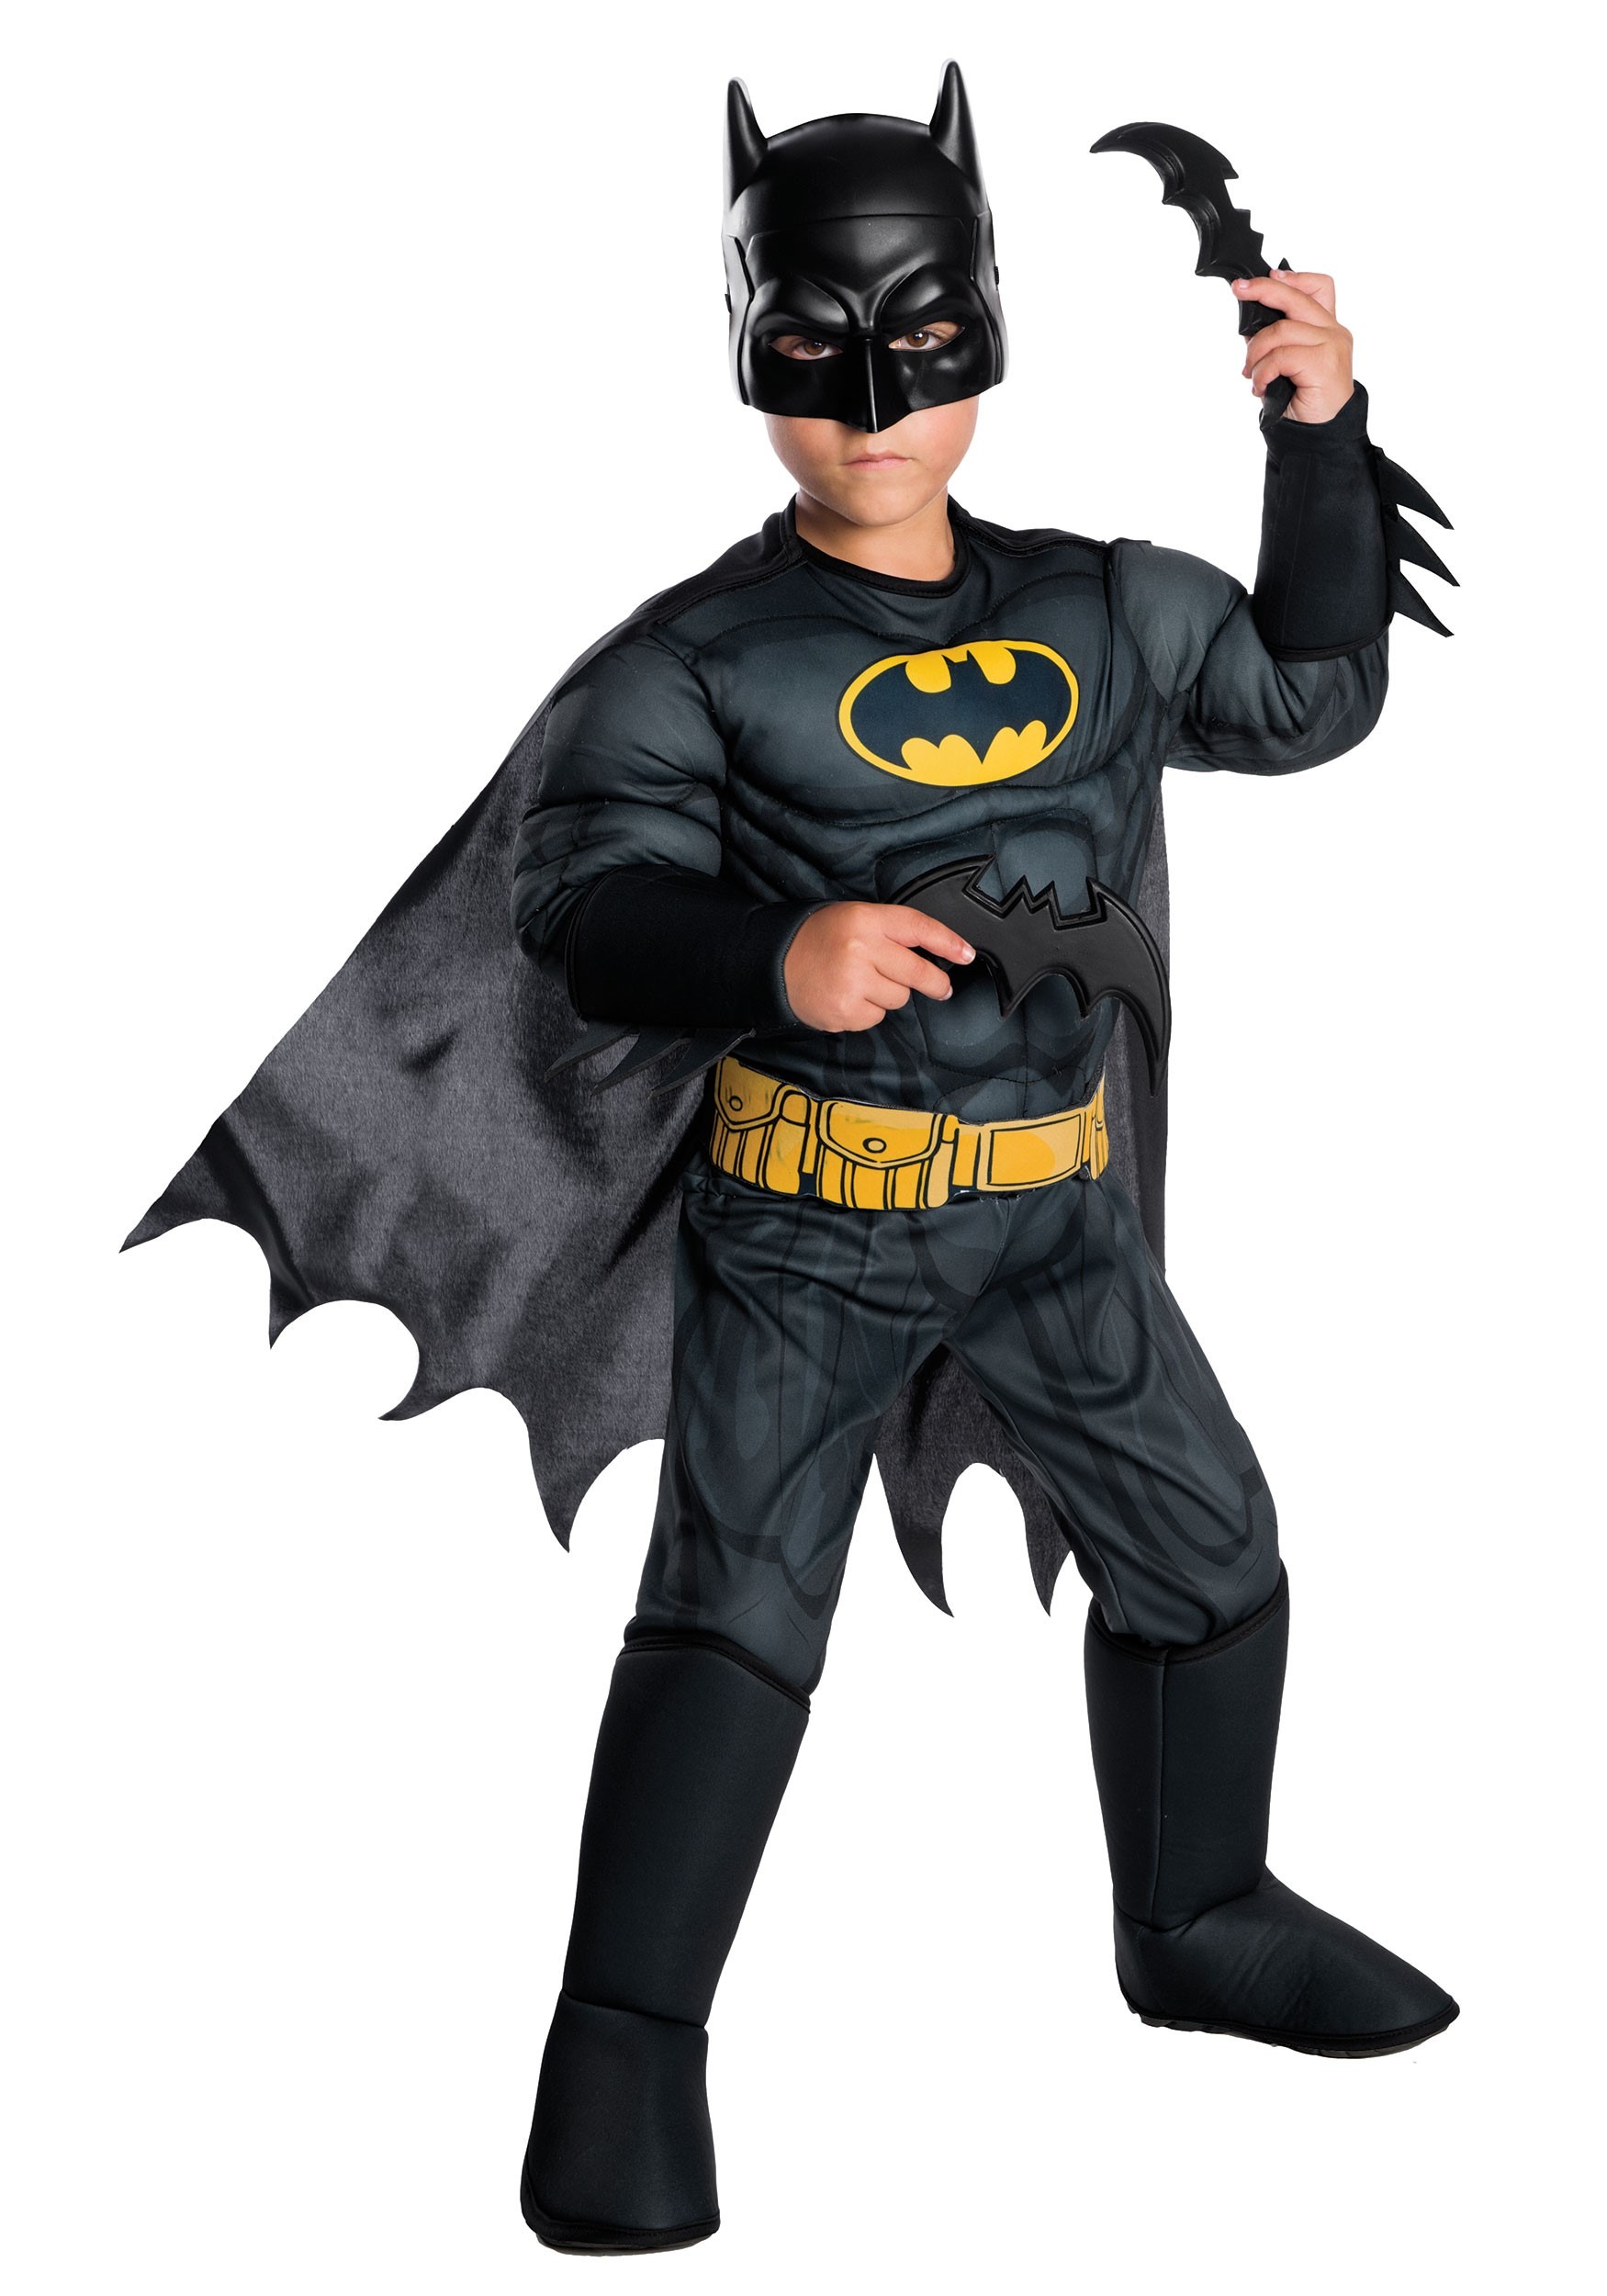 DC Comics Batman Costume for Kids